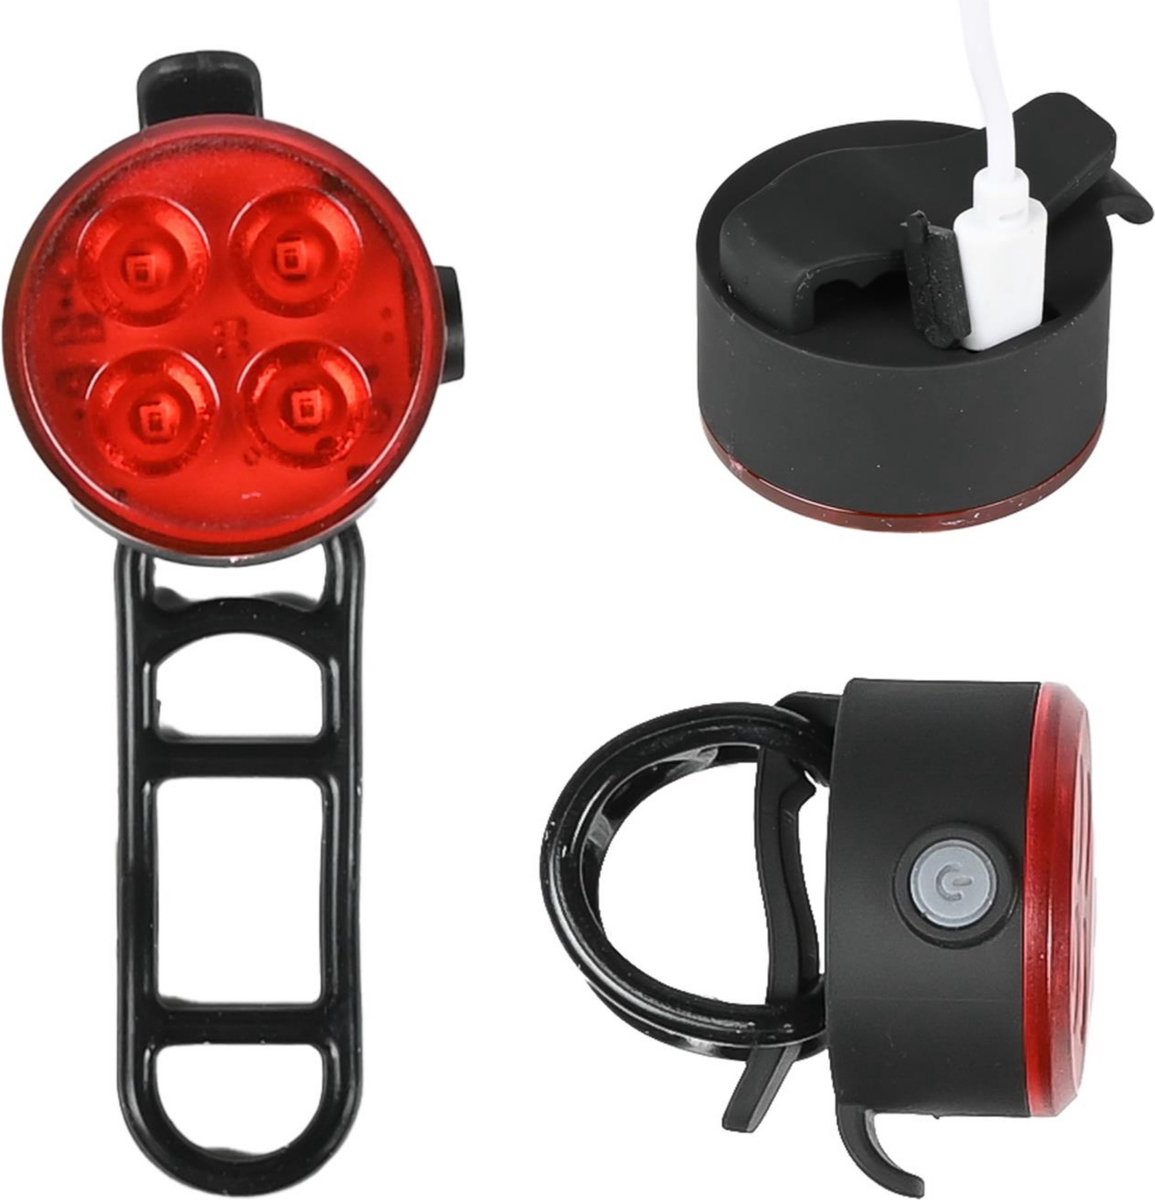 Benson Fietslamp met COB LEDs - Helder Rood Licht - Inclusief Laadkabel